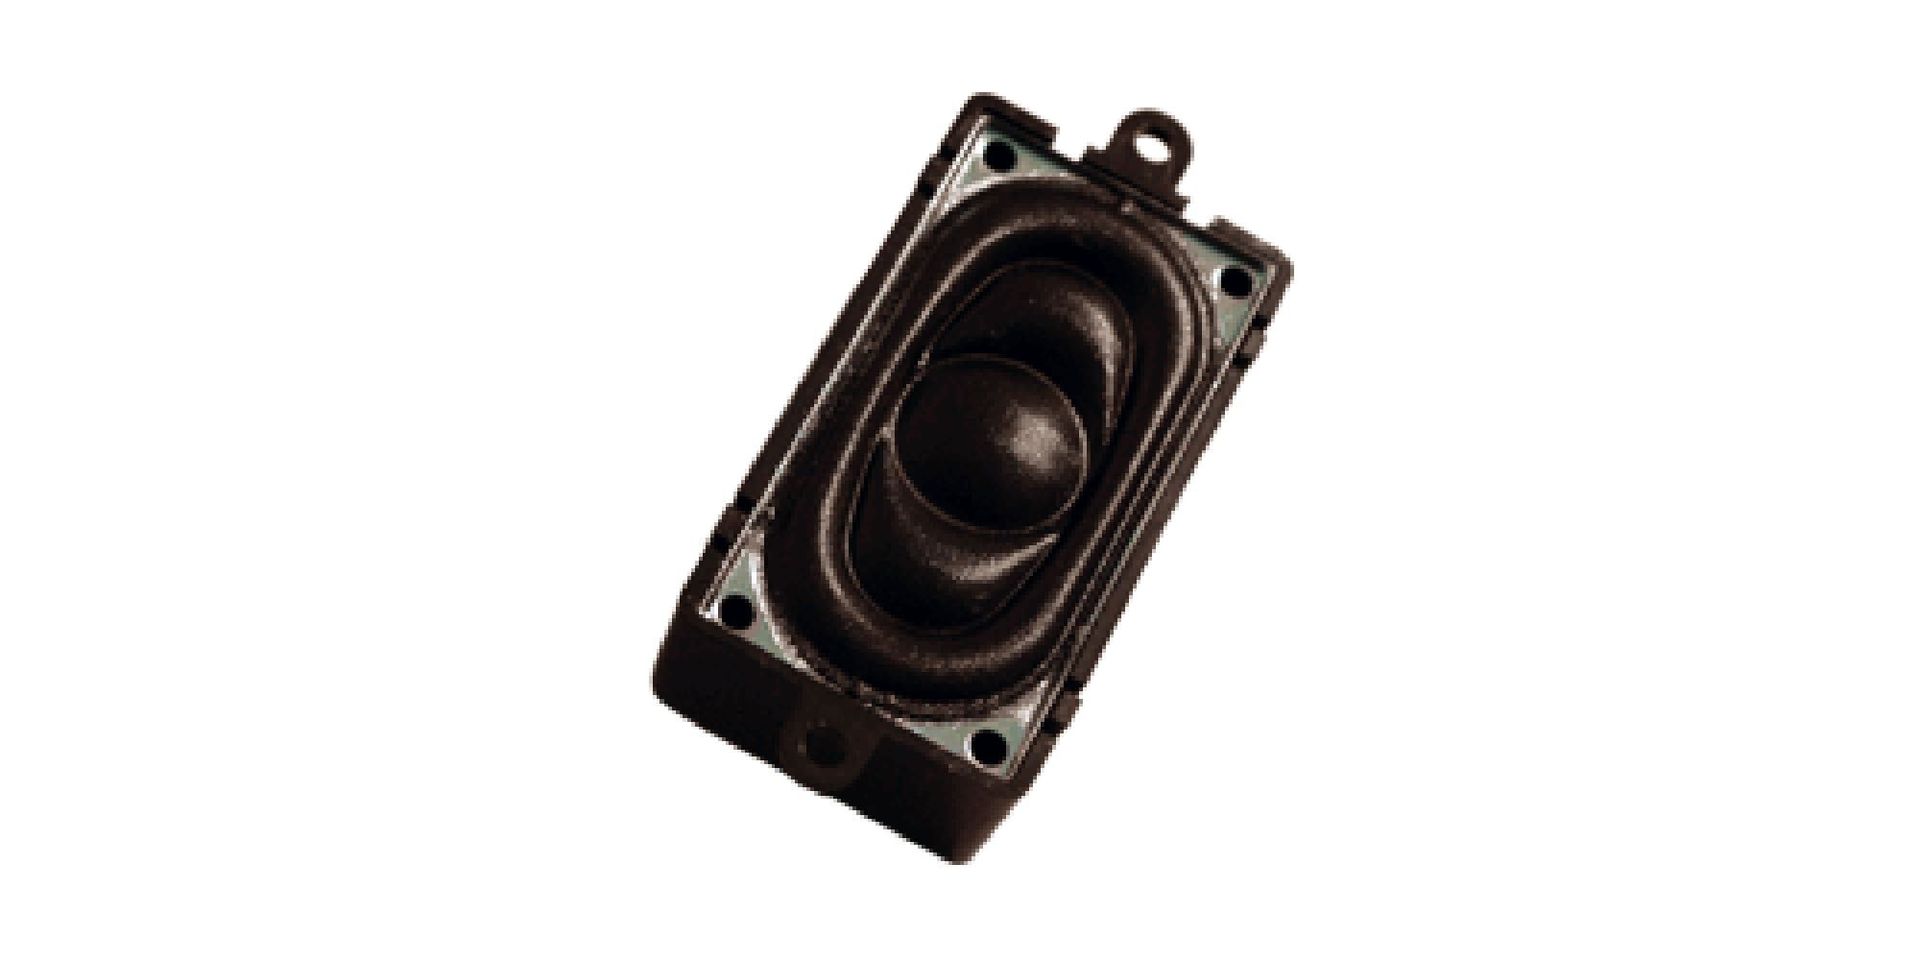 ESU 50334 - Lautsprecher 20mm x 40mm, rechteckig 4 Ohm mit Schallkapsel